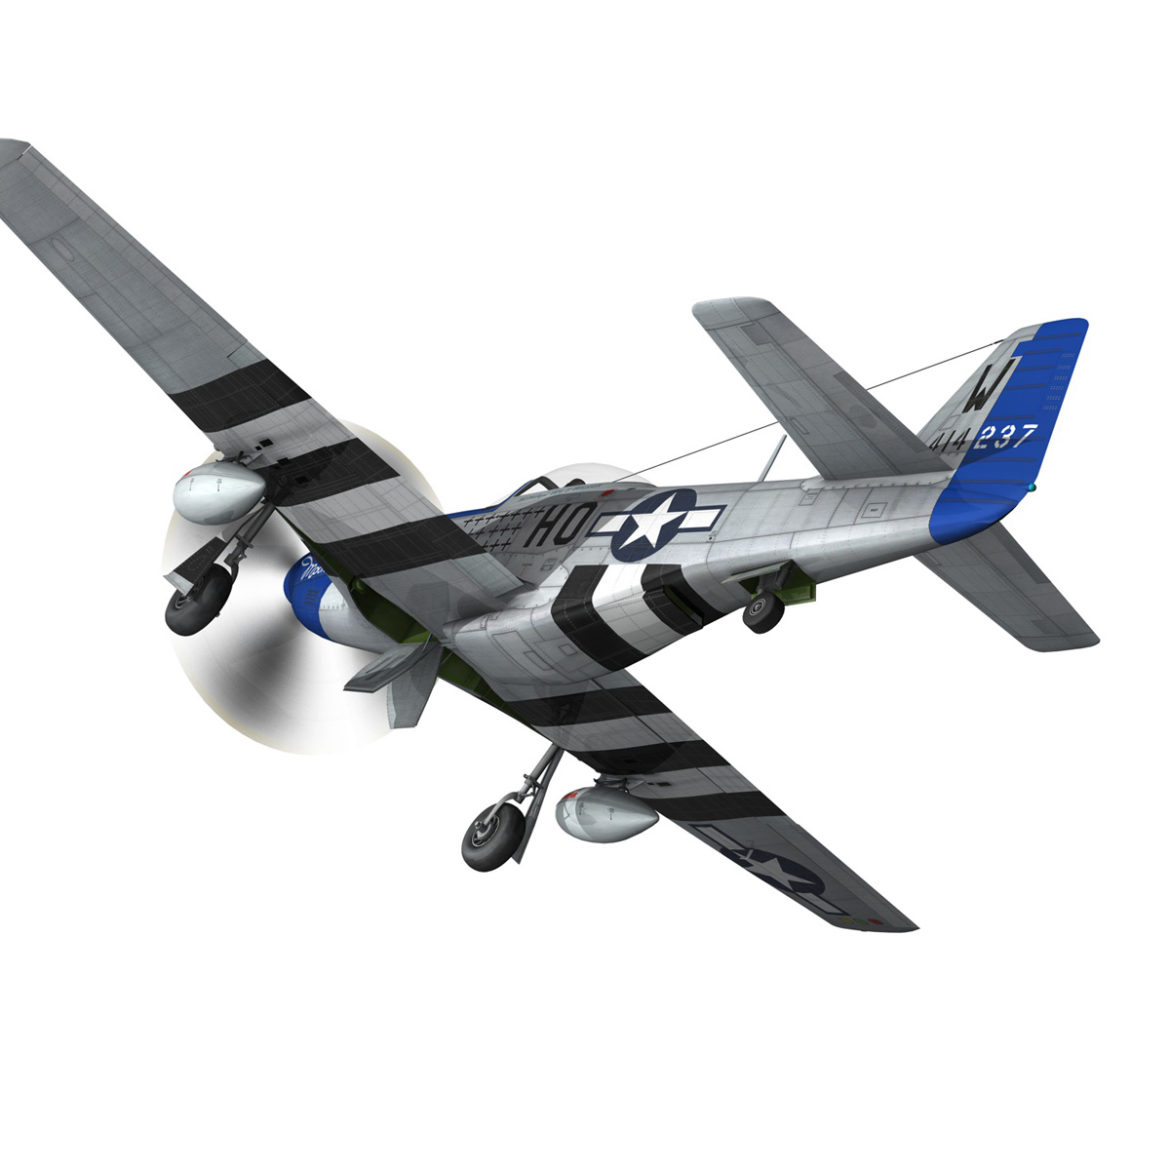  <a class="continue" href="https://www.flatpyramid.com/3d-models/vehicles-3d-models/aircraft/north-american-p-51d-mustang-moonbeam-mcswine/">Continue Reading<span> North American P-51D Mustang – Moonbeam McSwine</span></a>